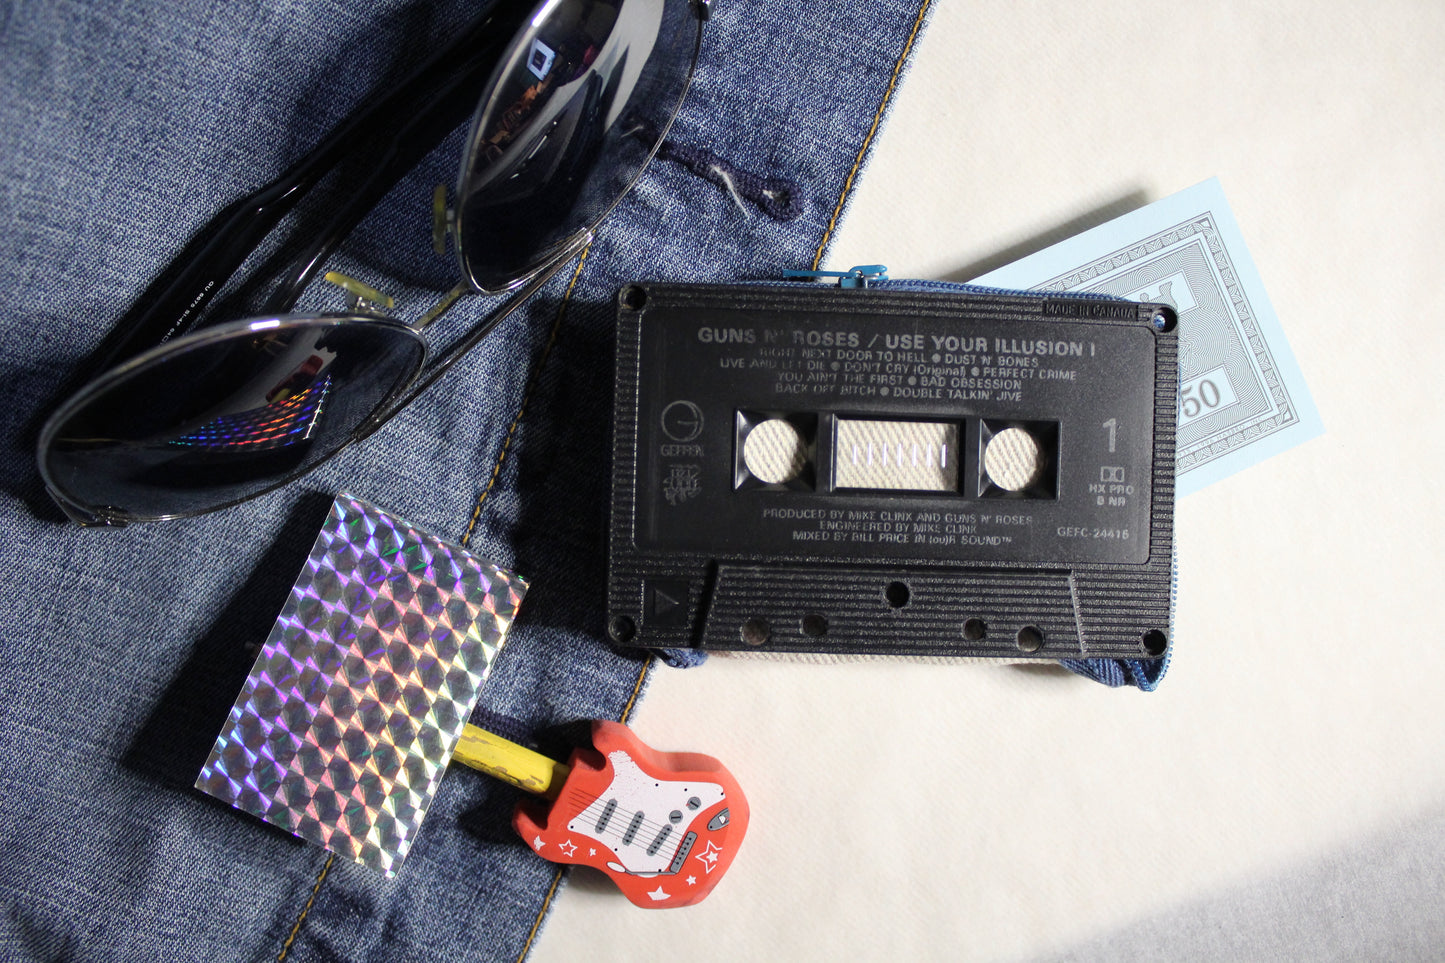 Cassette Wallet - Guns N' Roses